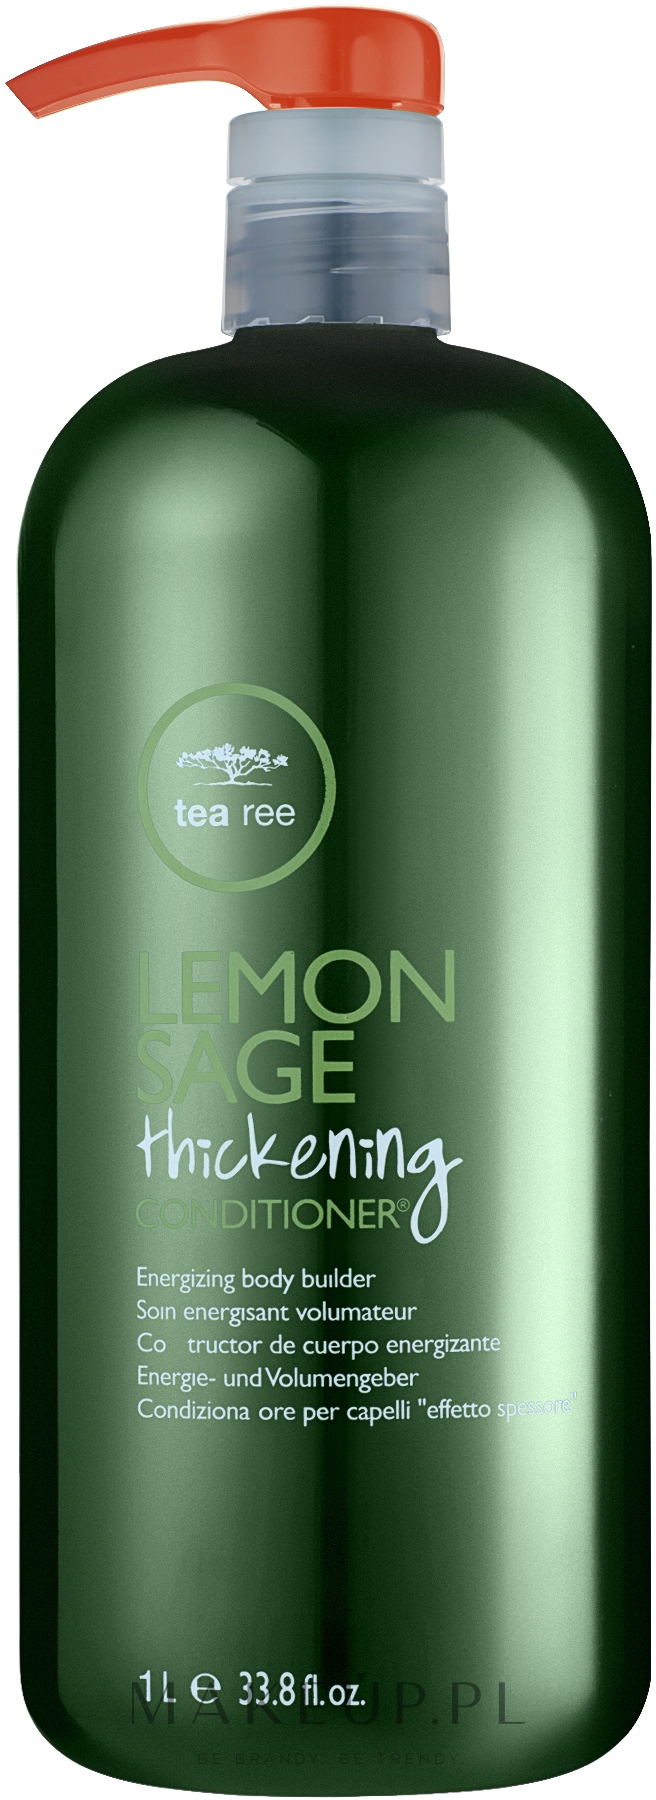 Zagęszczająca odżywka do włosów Cytryna i szałwia - Paul Mitchell Tea Tree Lemon Sage Thickening Conditioner — Zdjęcie 1000 ml